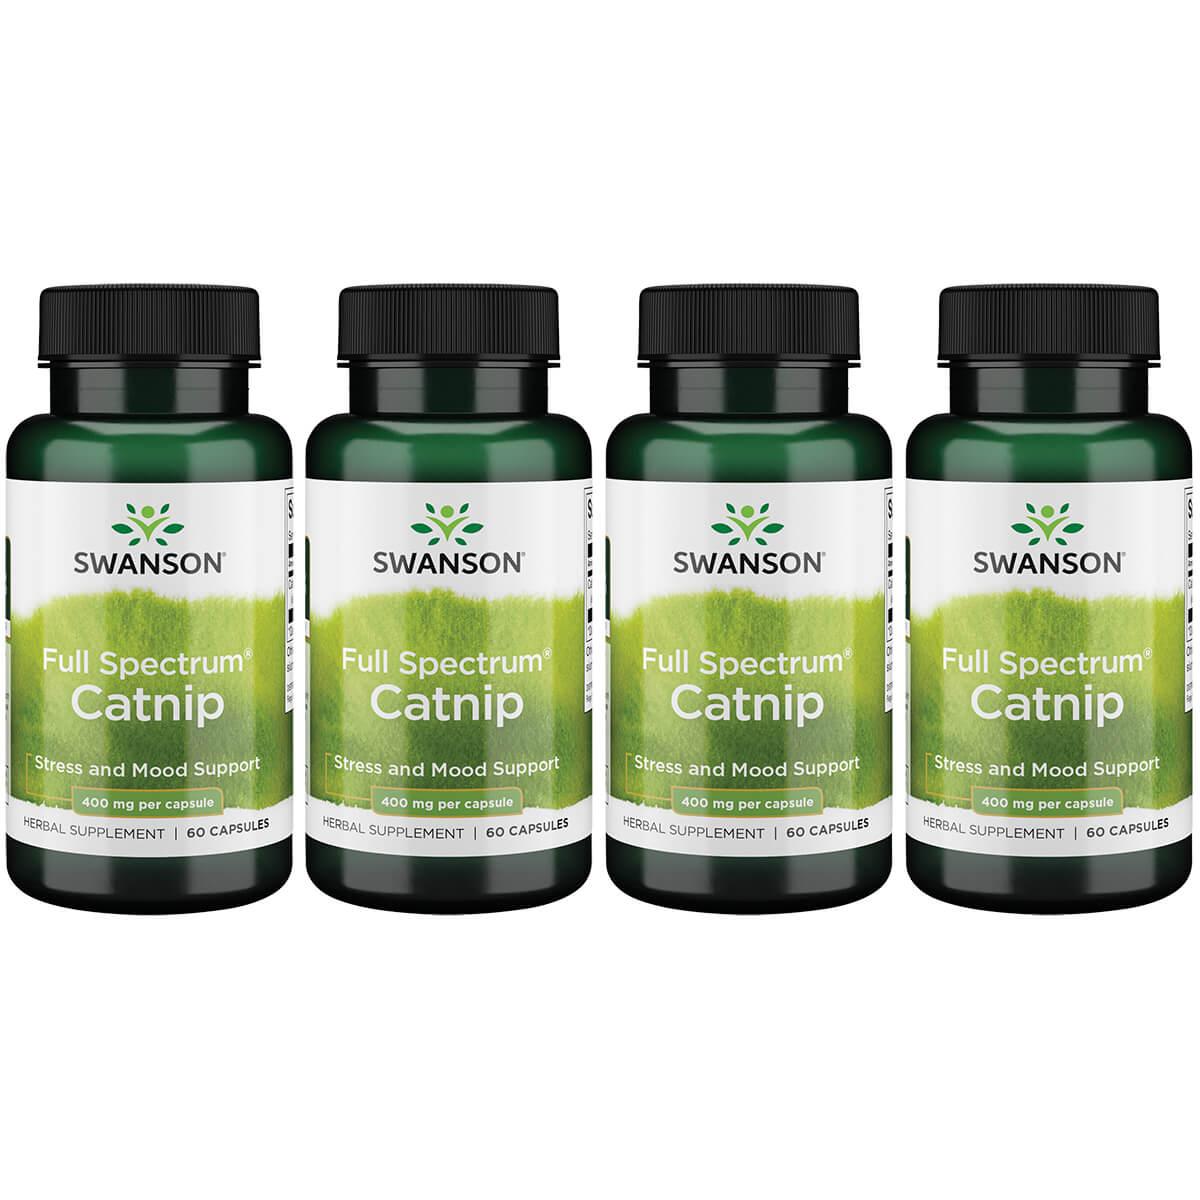 Swanson Premium Full Spectrum Catnip 4 Pack Vitamin 400 mg 60 Caps